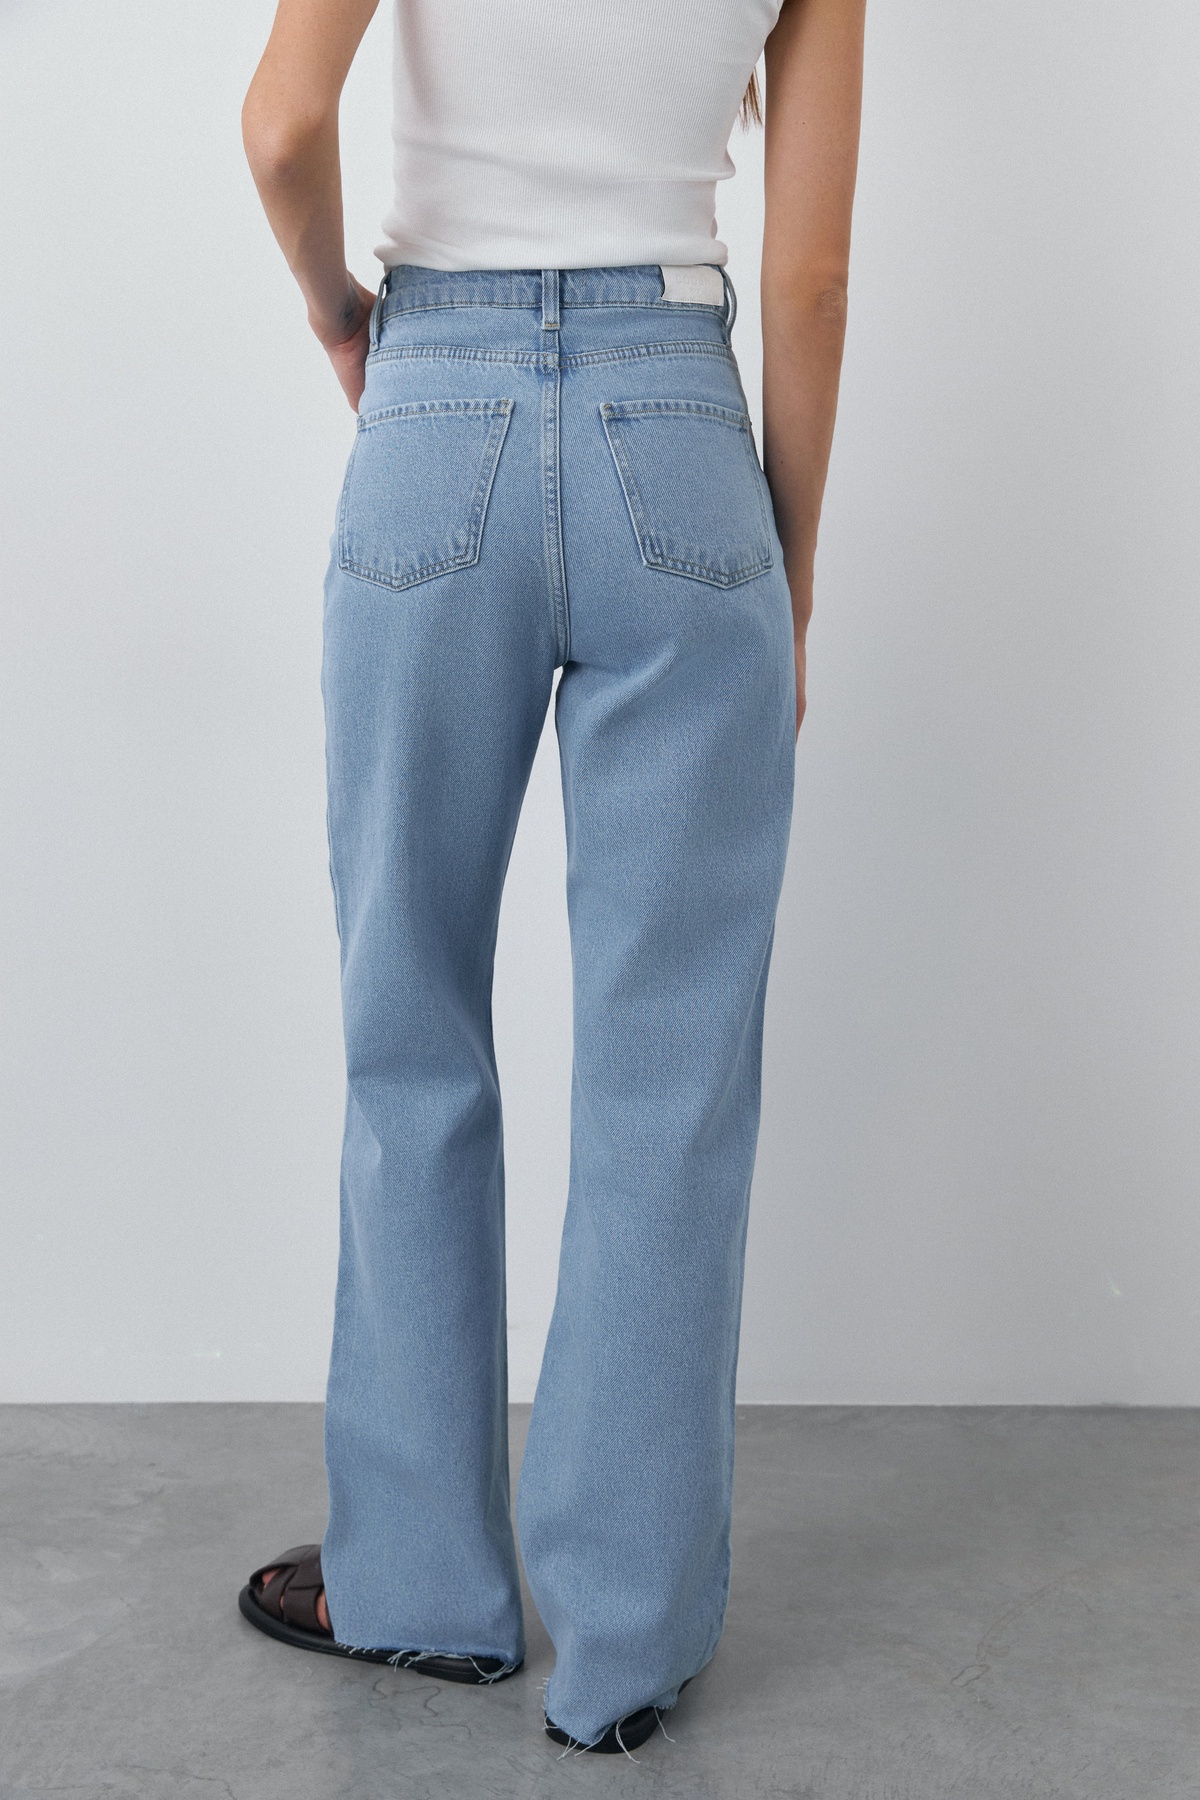 Straight Cut BASIC Jeans with a High Waist